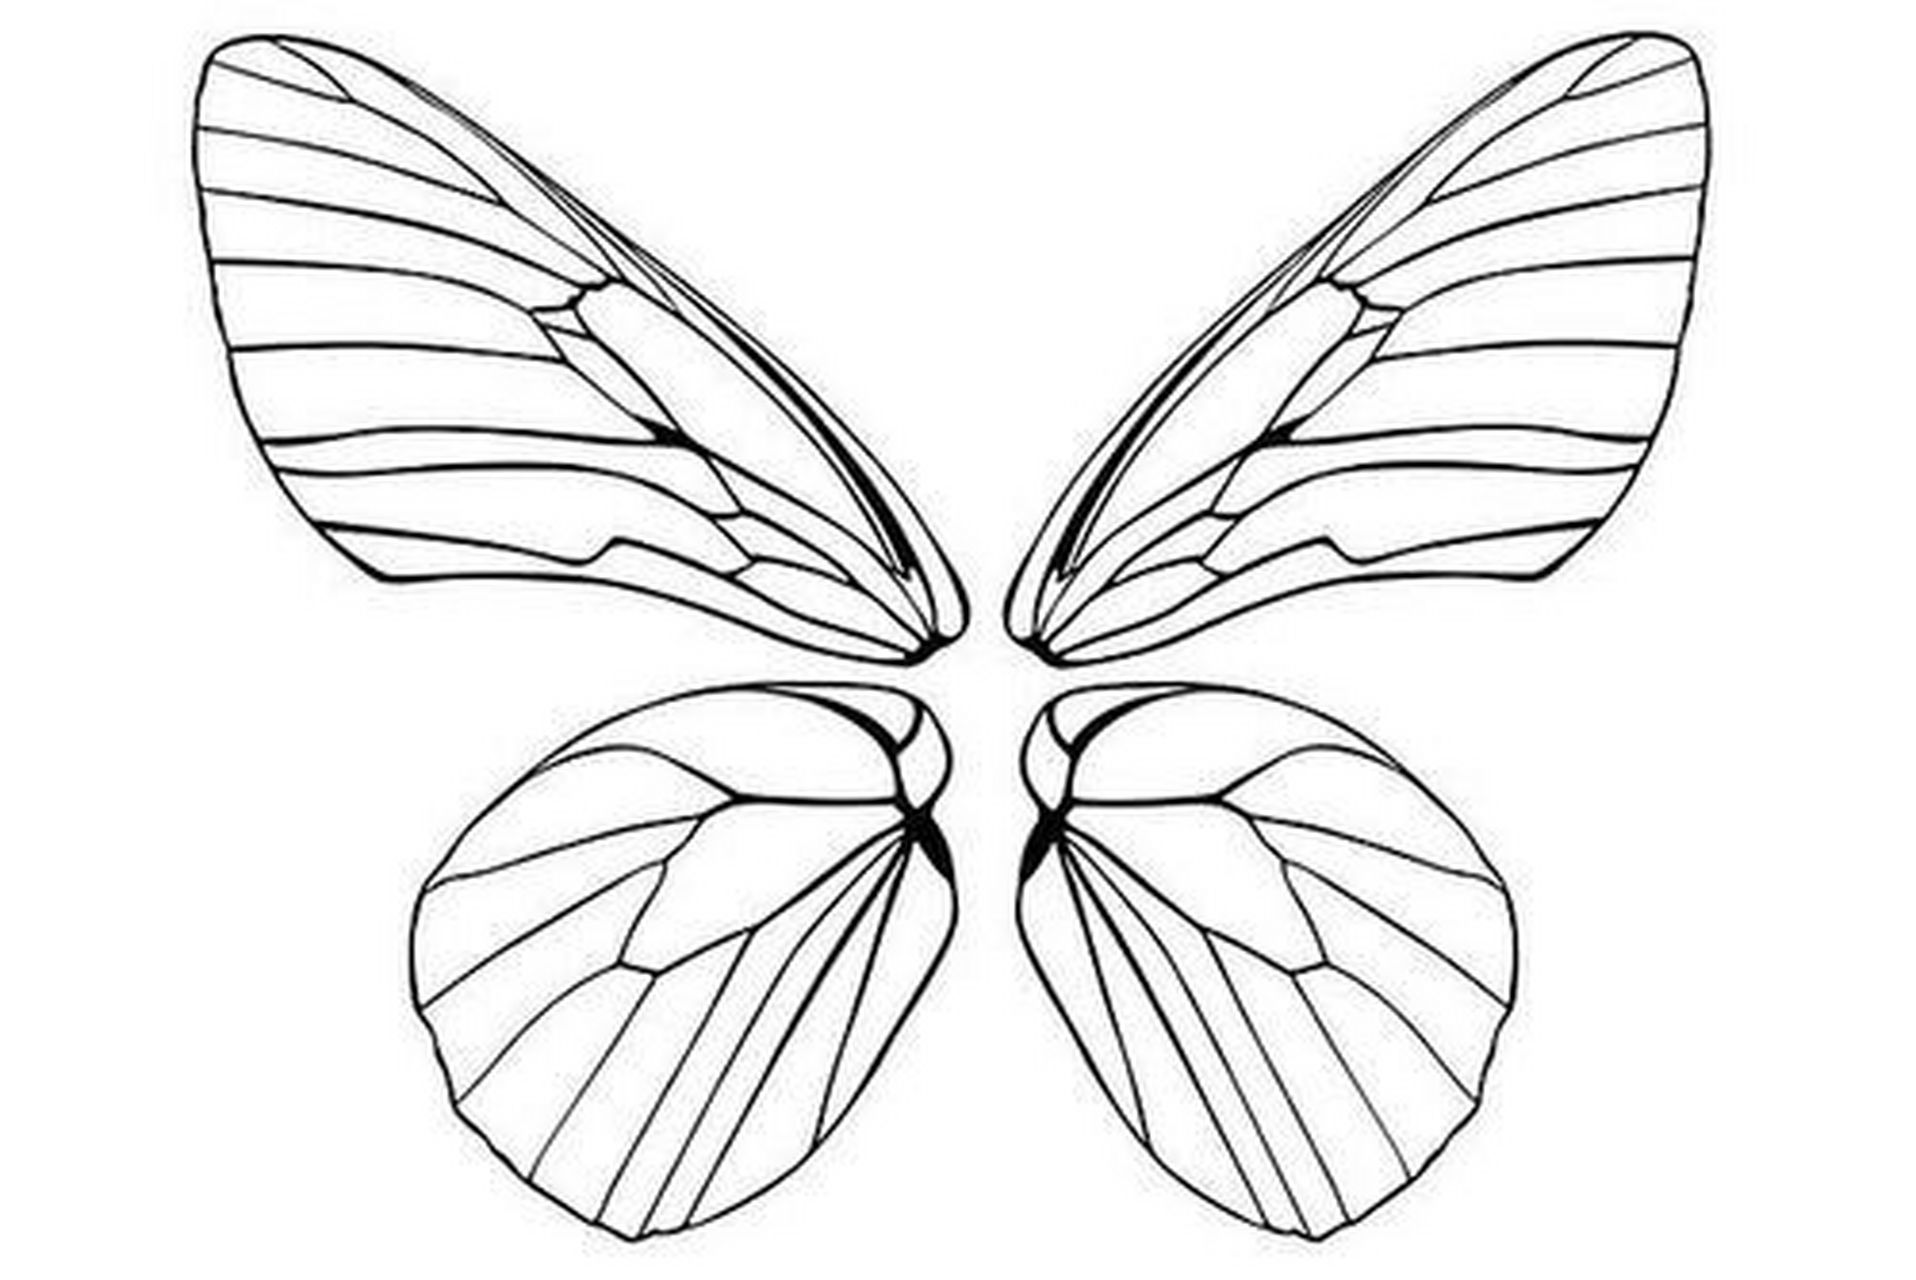 你们要的蝴蝶翅膀图纸来啦 忘了在哪里保存的图片了,喜欢可以收藏